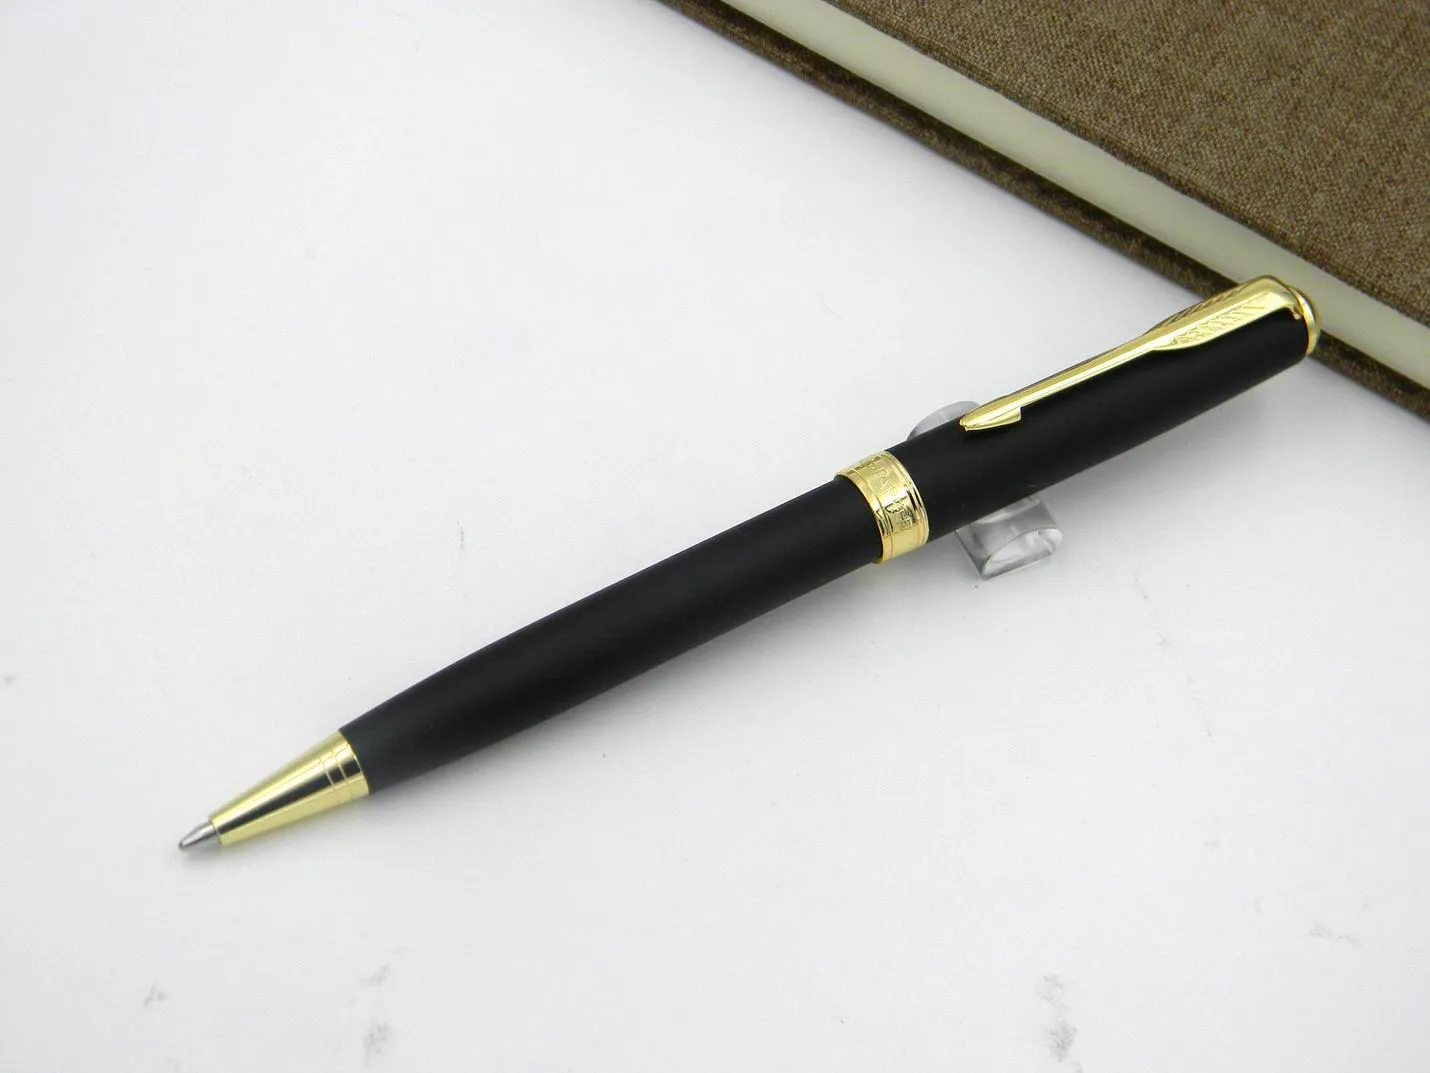 2 Stück Büro-Kugelschreiber der Sonnet-Serie aus goldenem Metall, heißes Geschenk